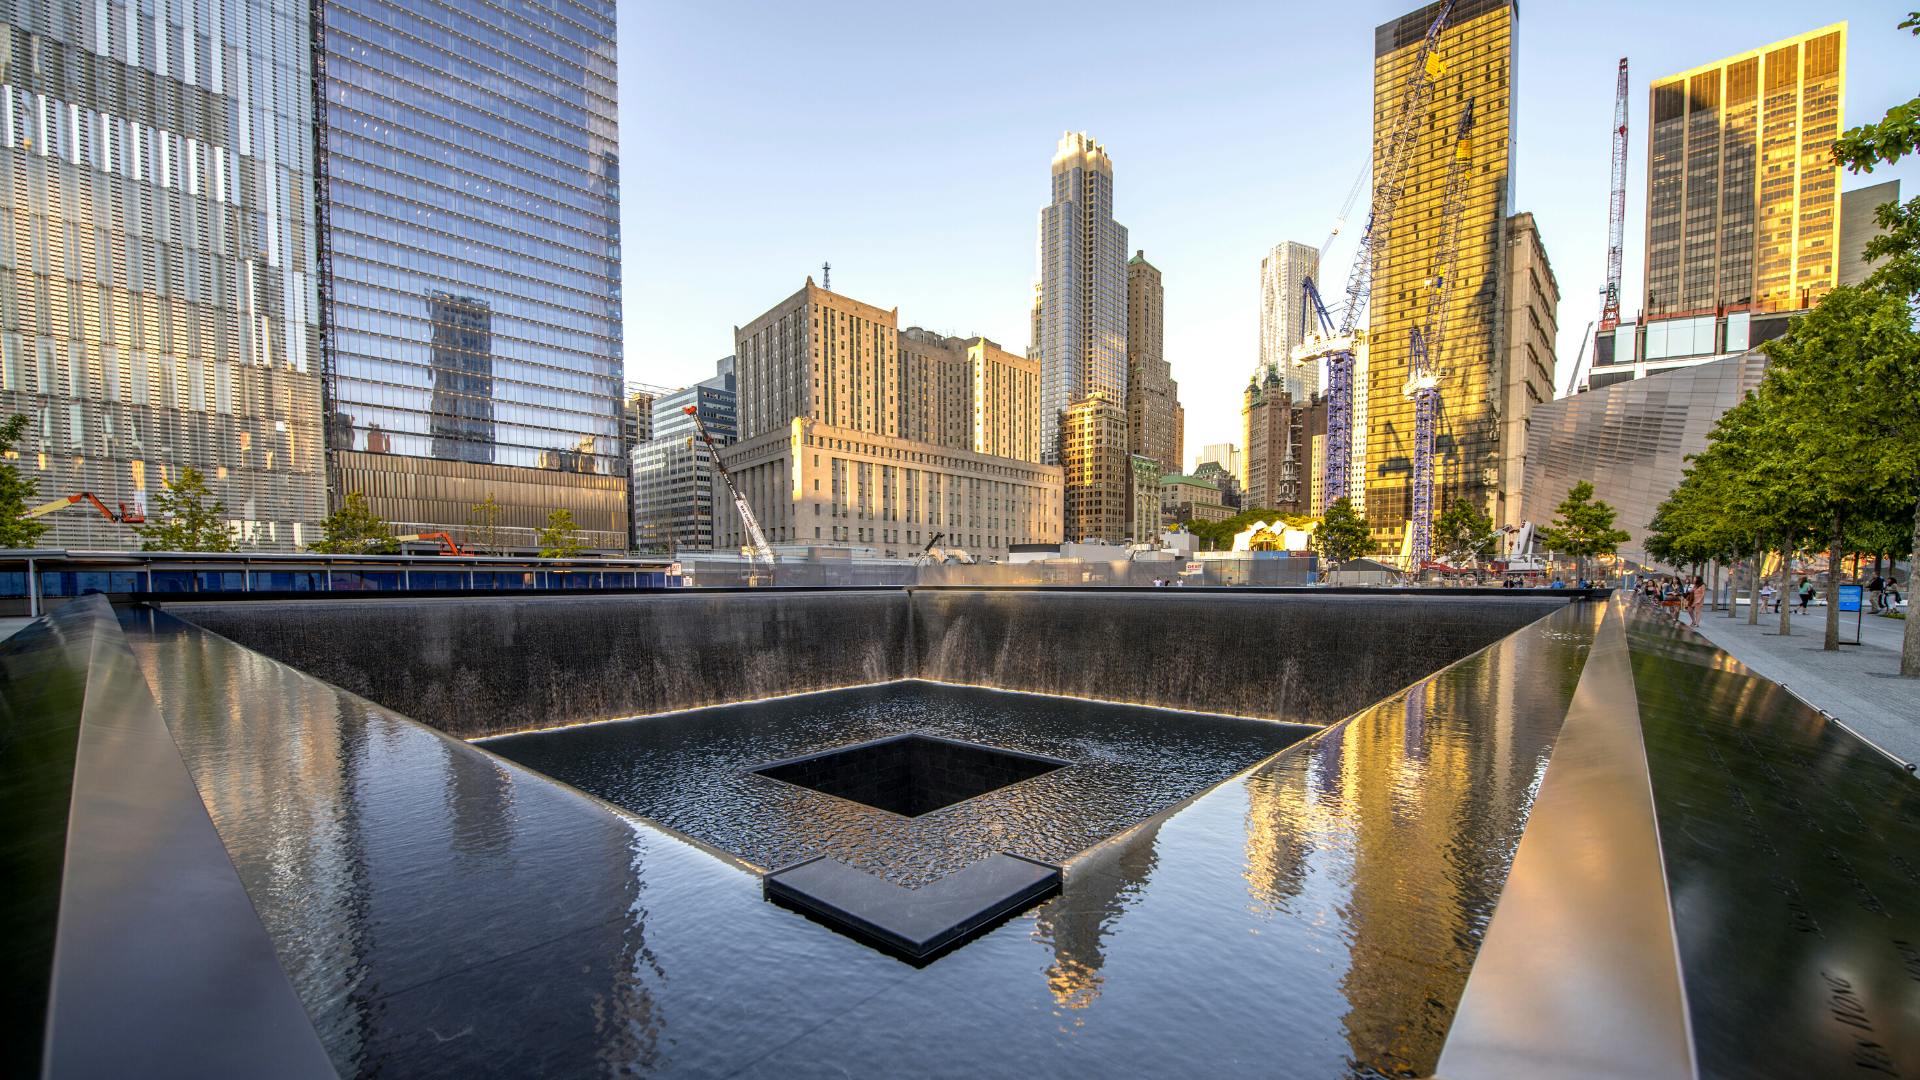 9/11 Memorial and Museum - New York